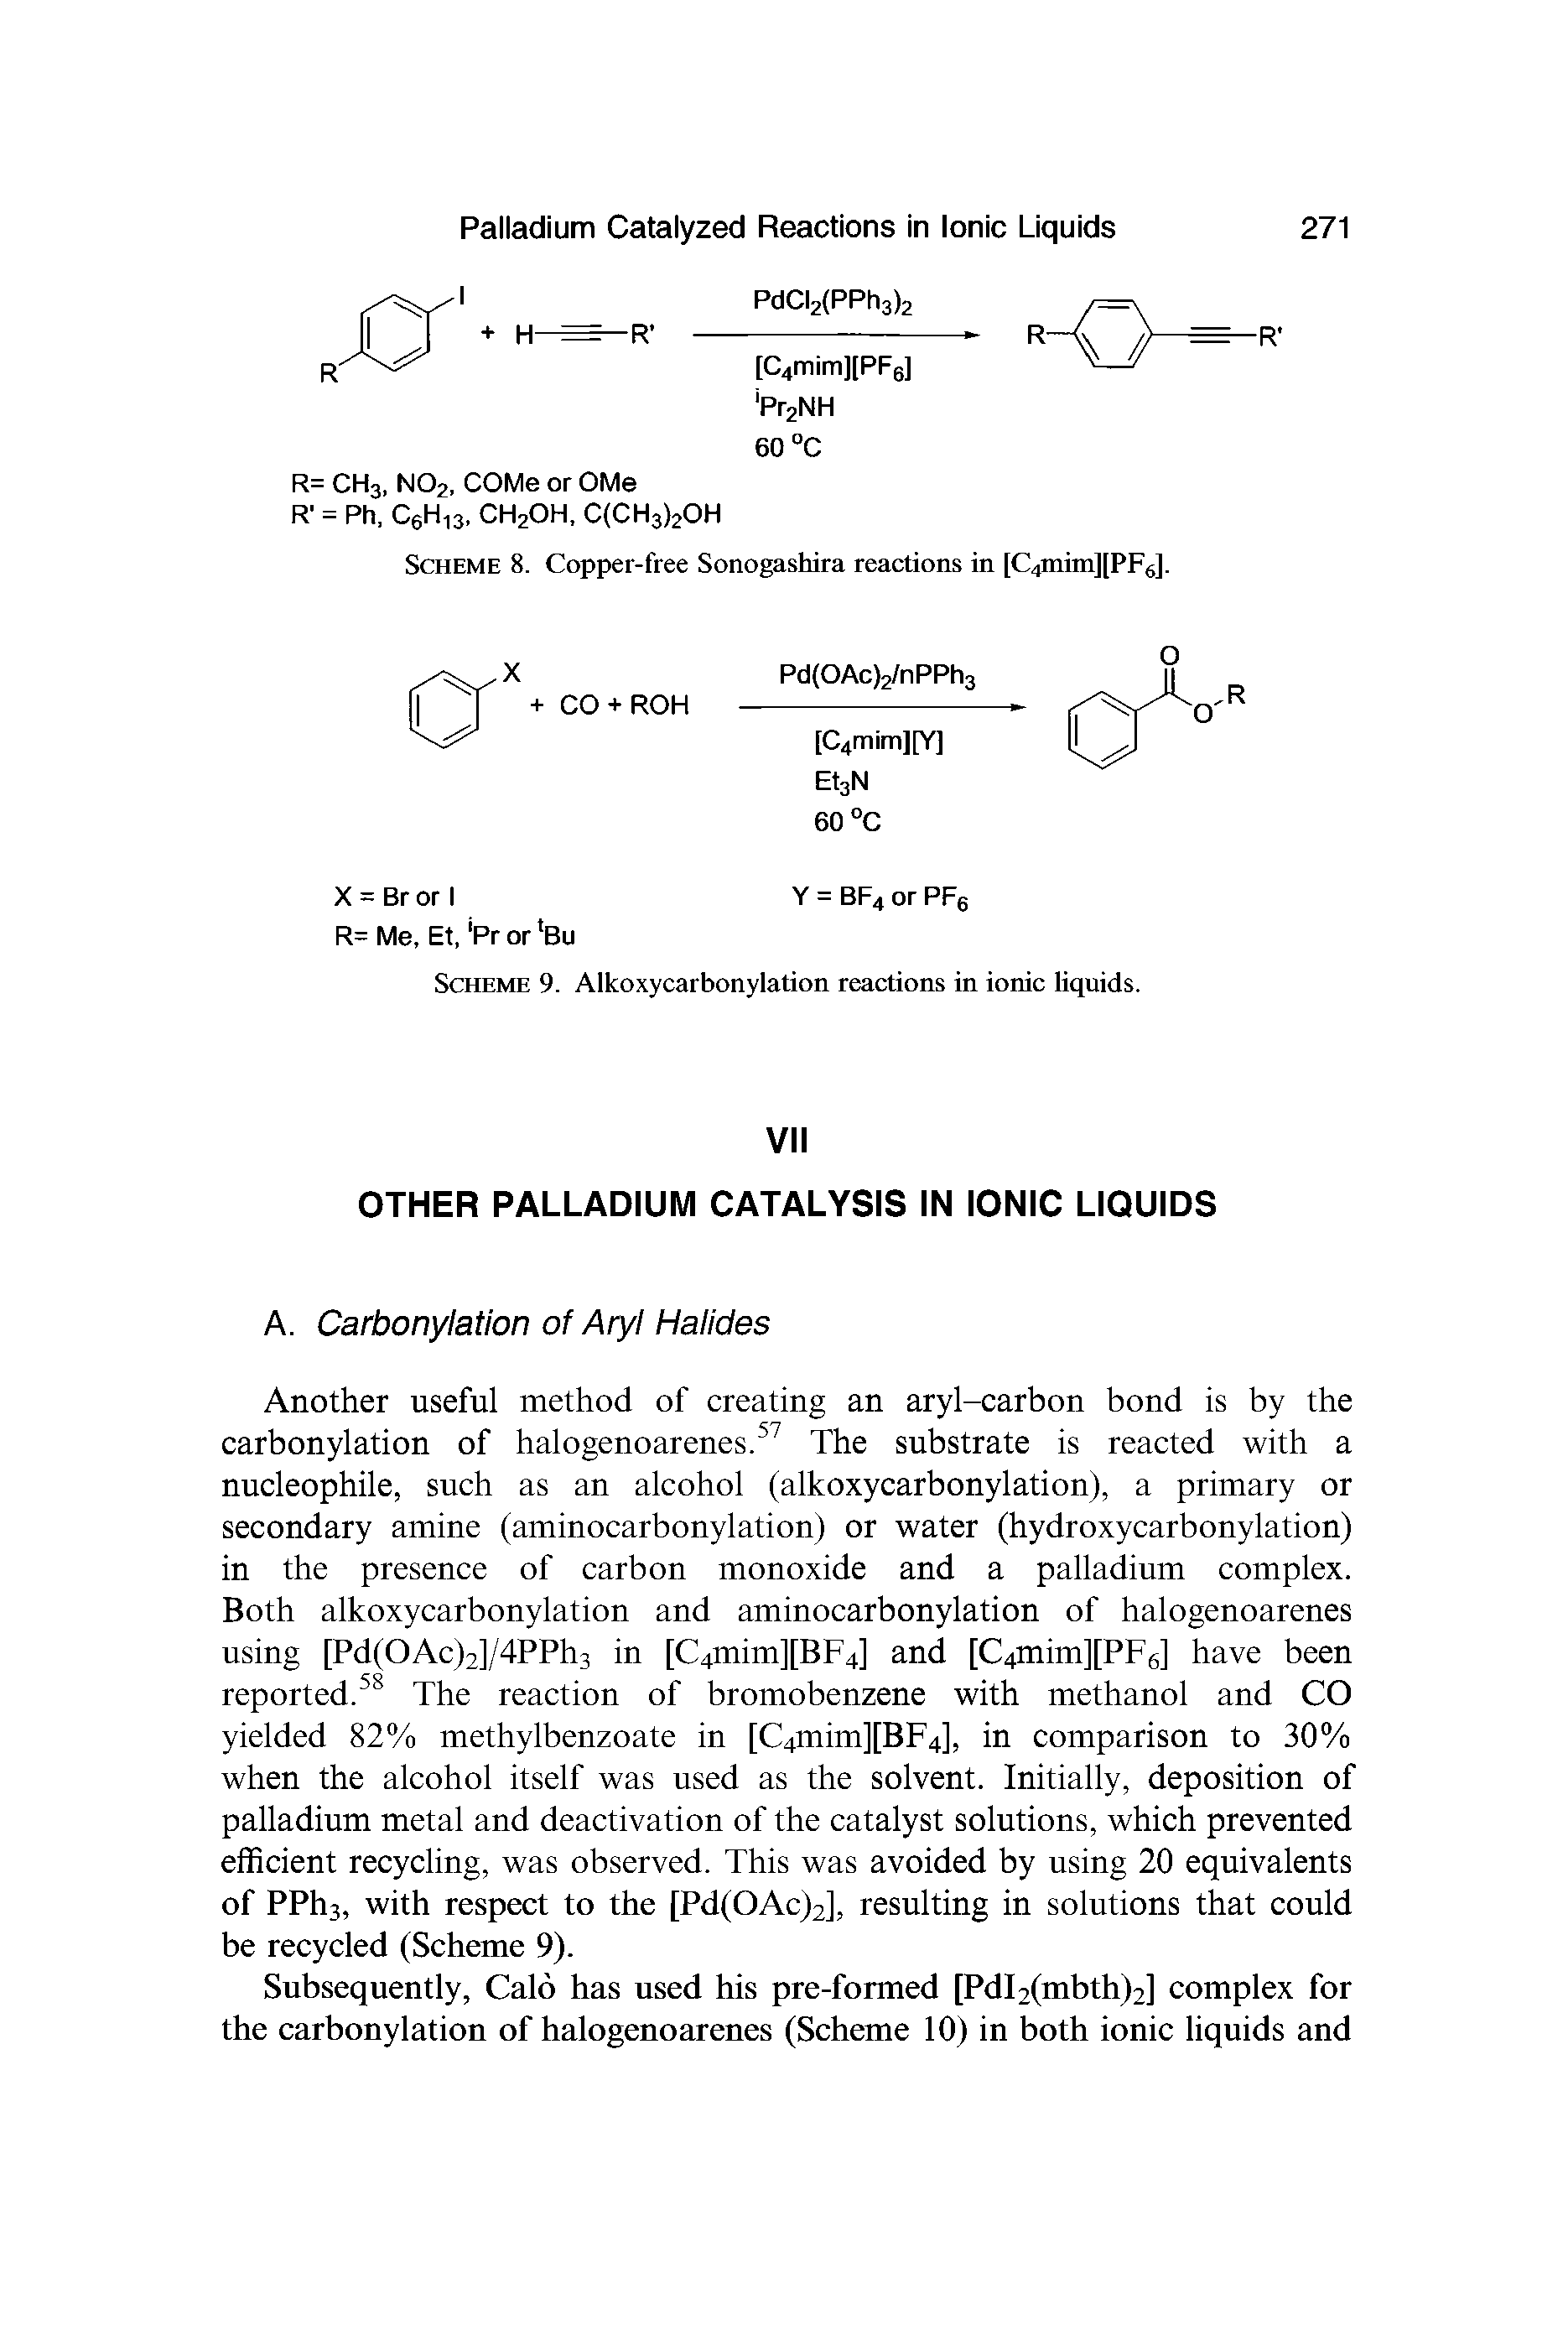 Scheme 8. Copper-free Sonogashira reactions in [C4mim][PF6].